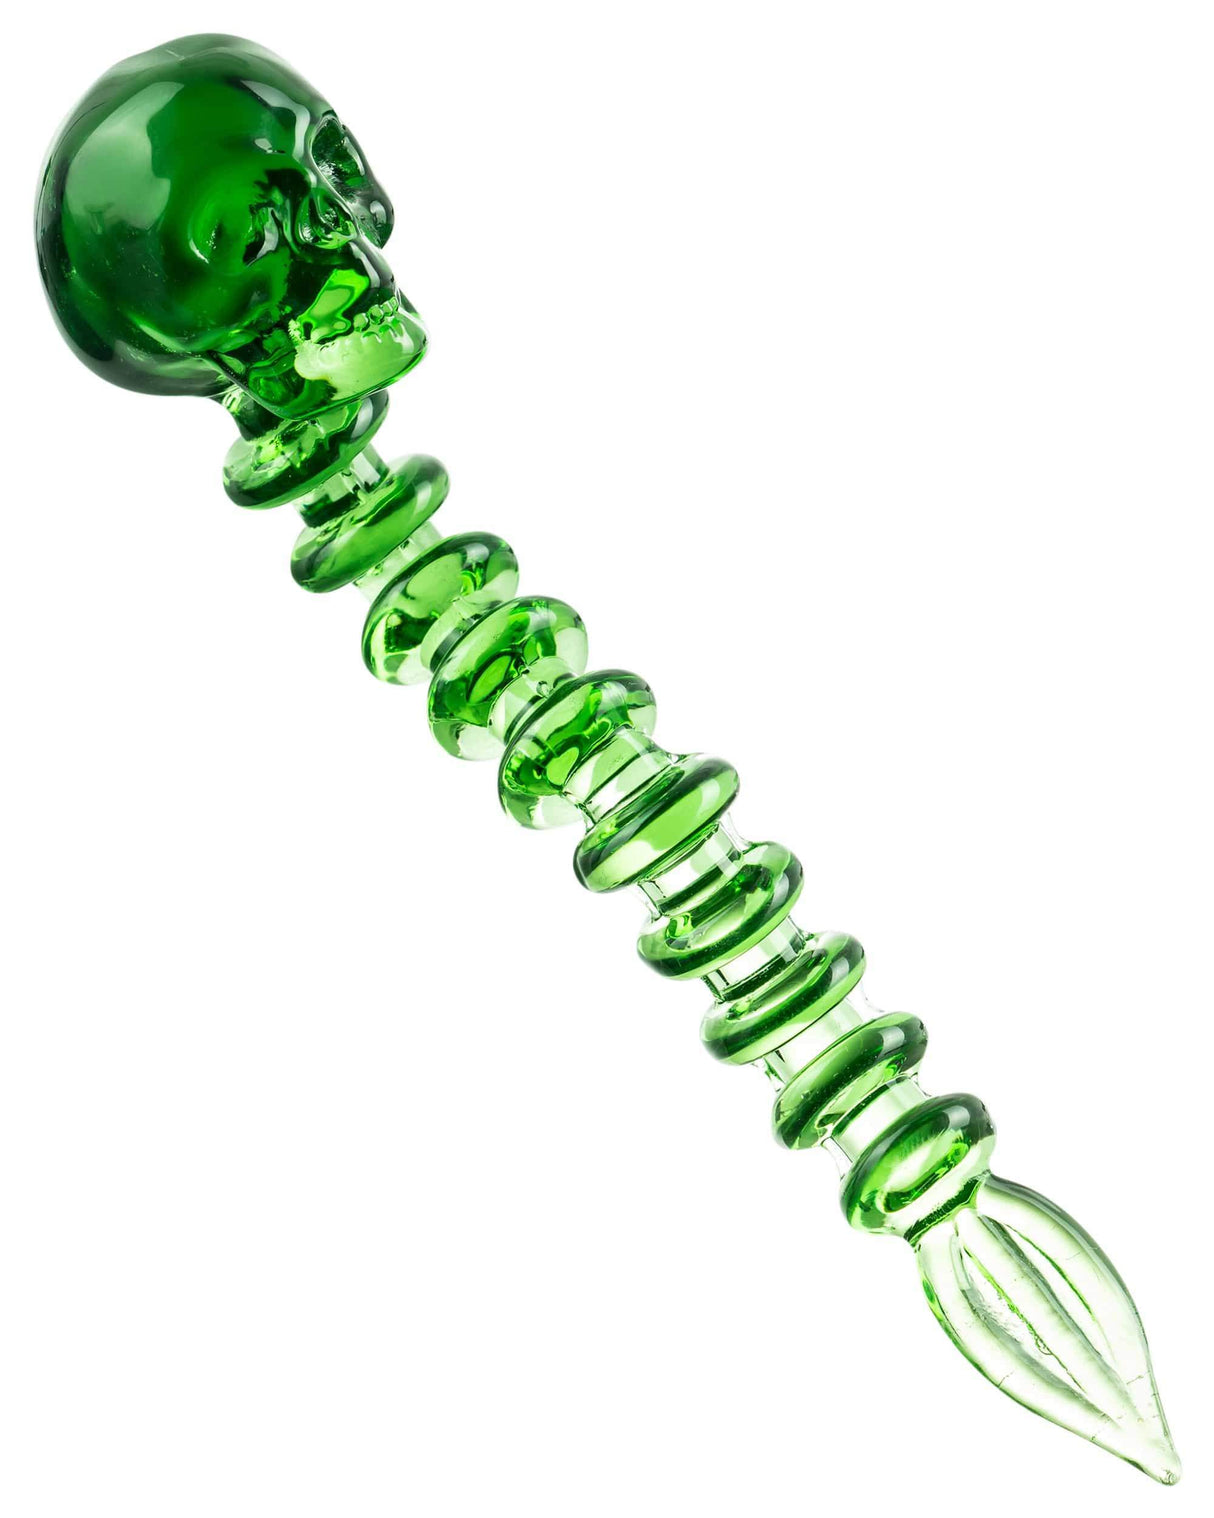 Valiant Distribution Skull Spine Dabber in Green - 4.5" Glass Tool for Dab Rigs, Novelty Design